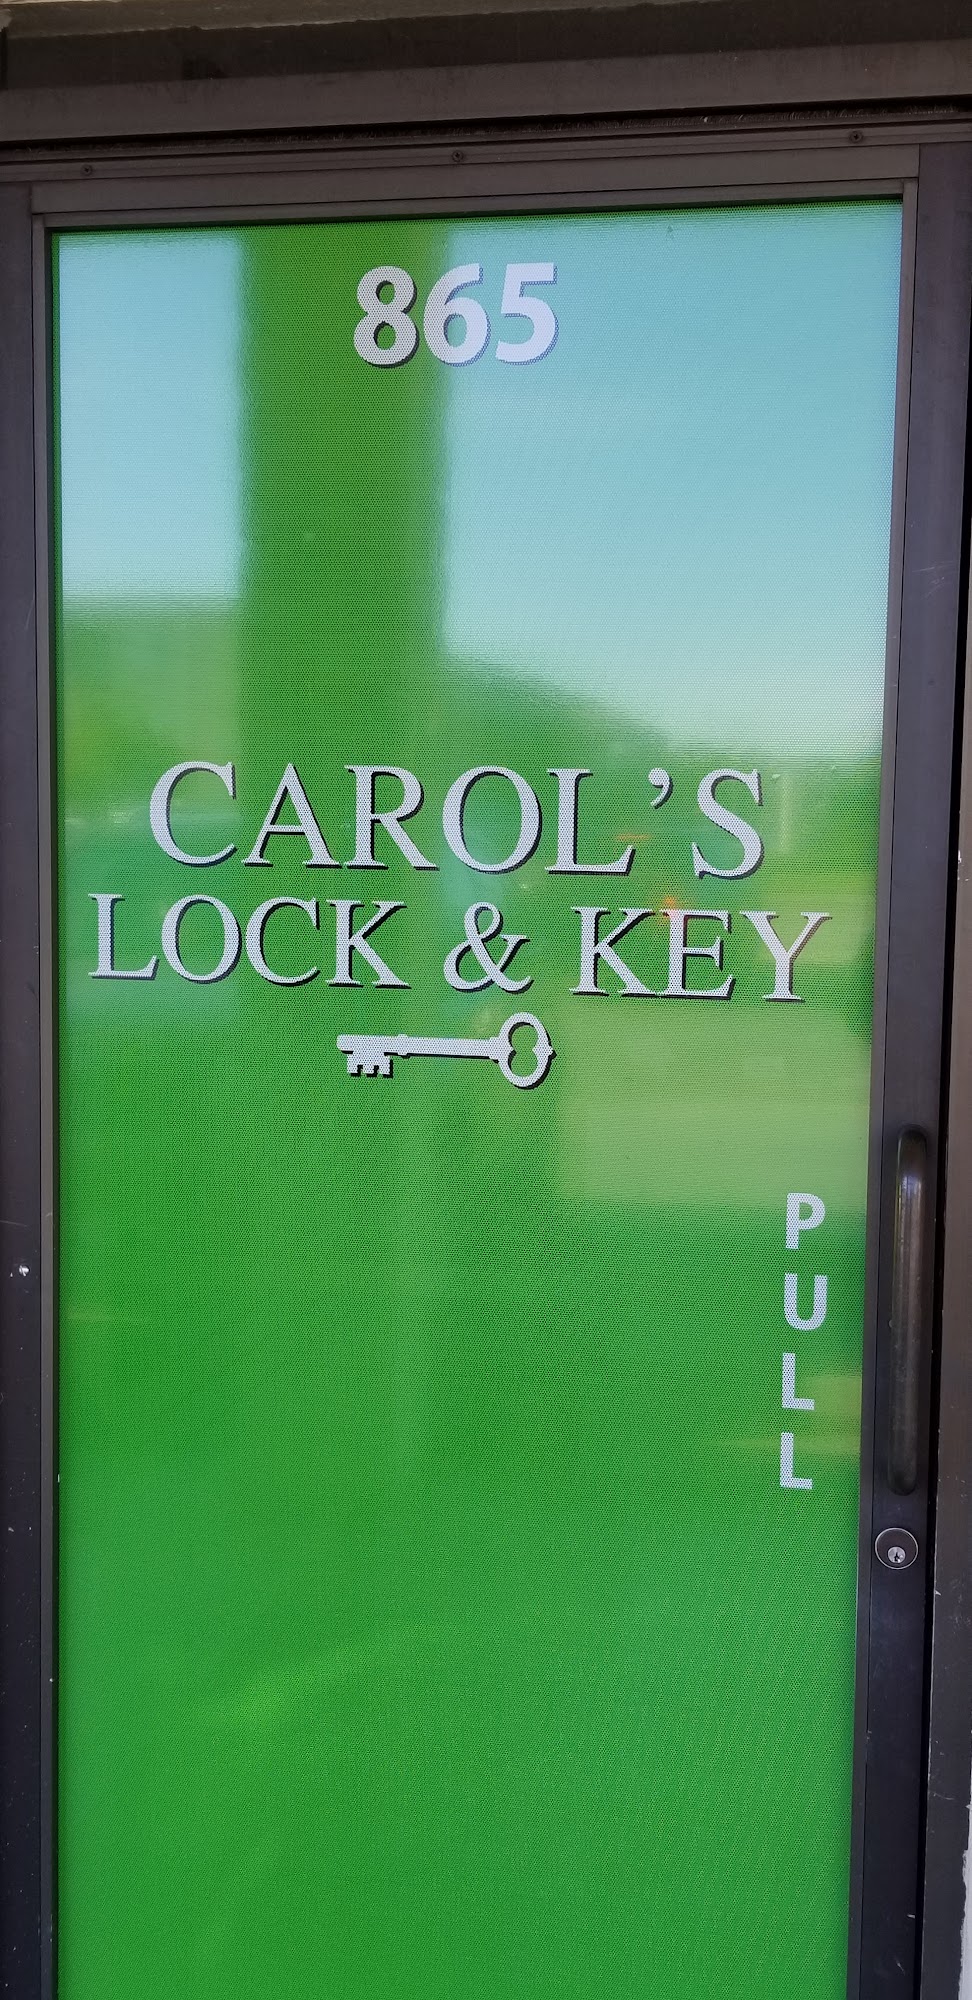 Carol's Lock & Key